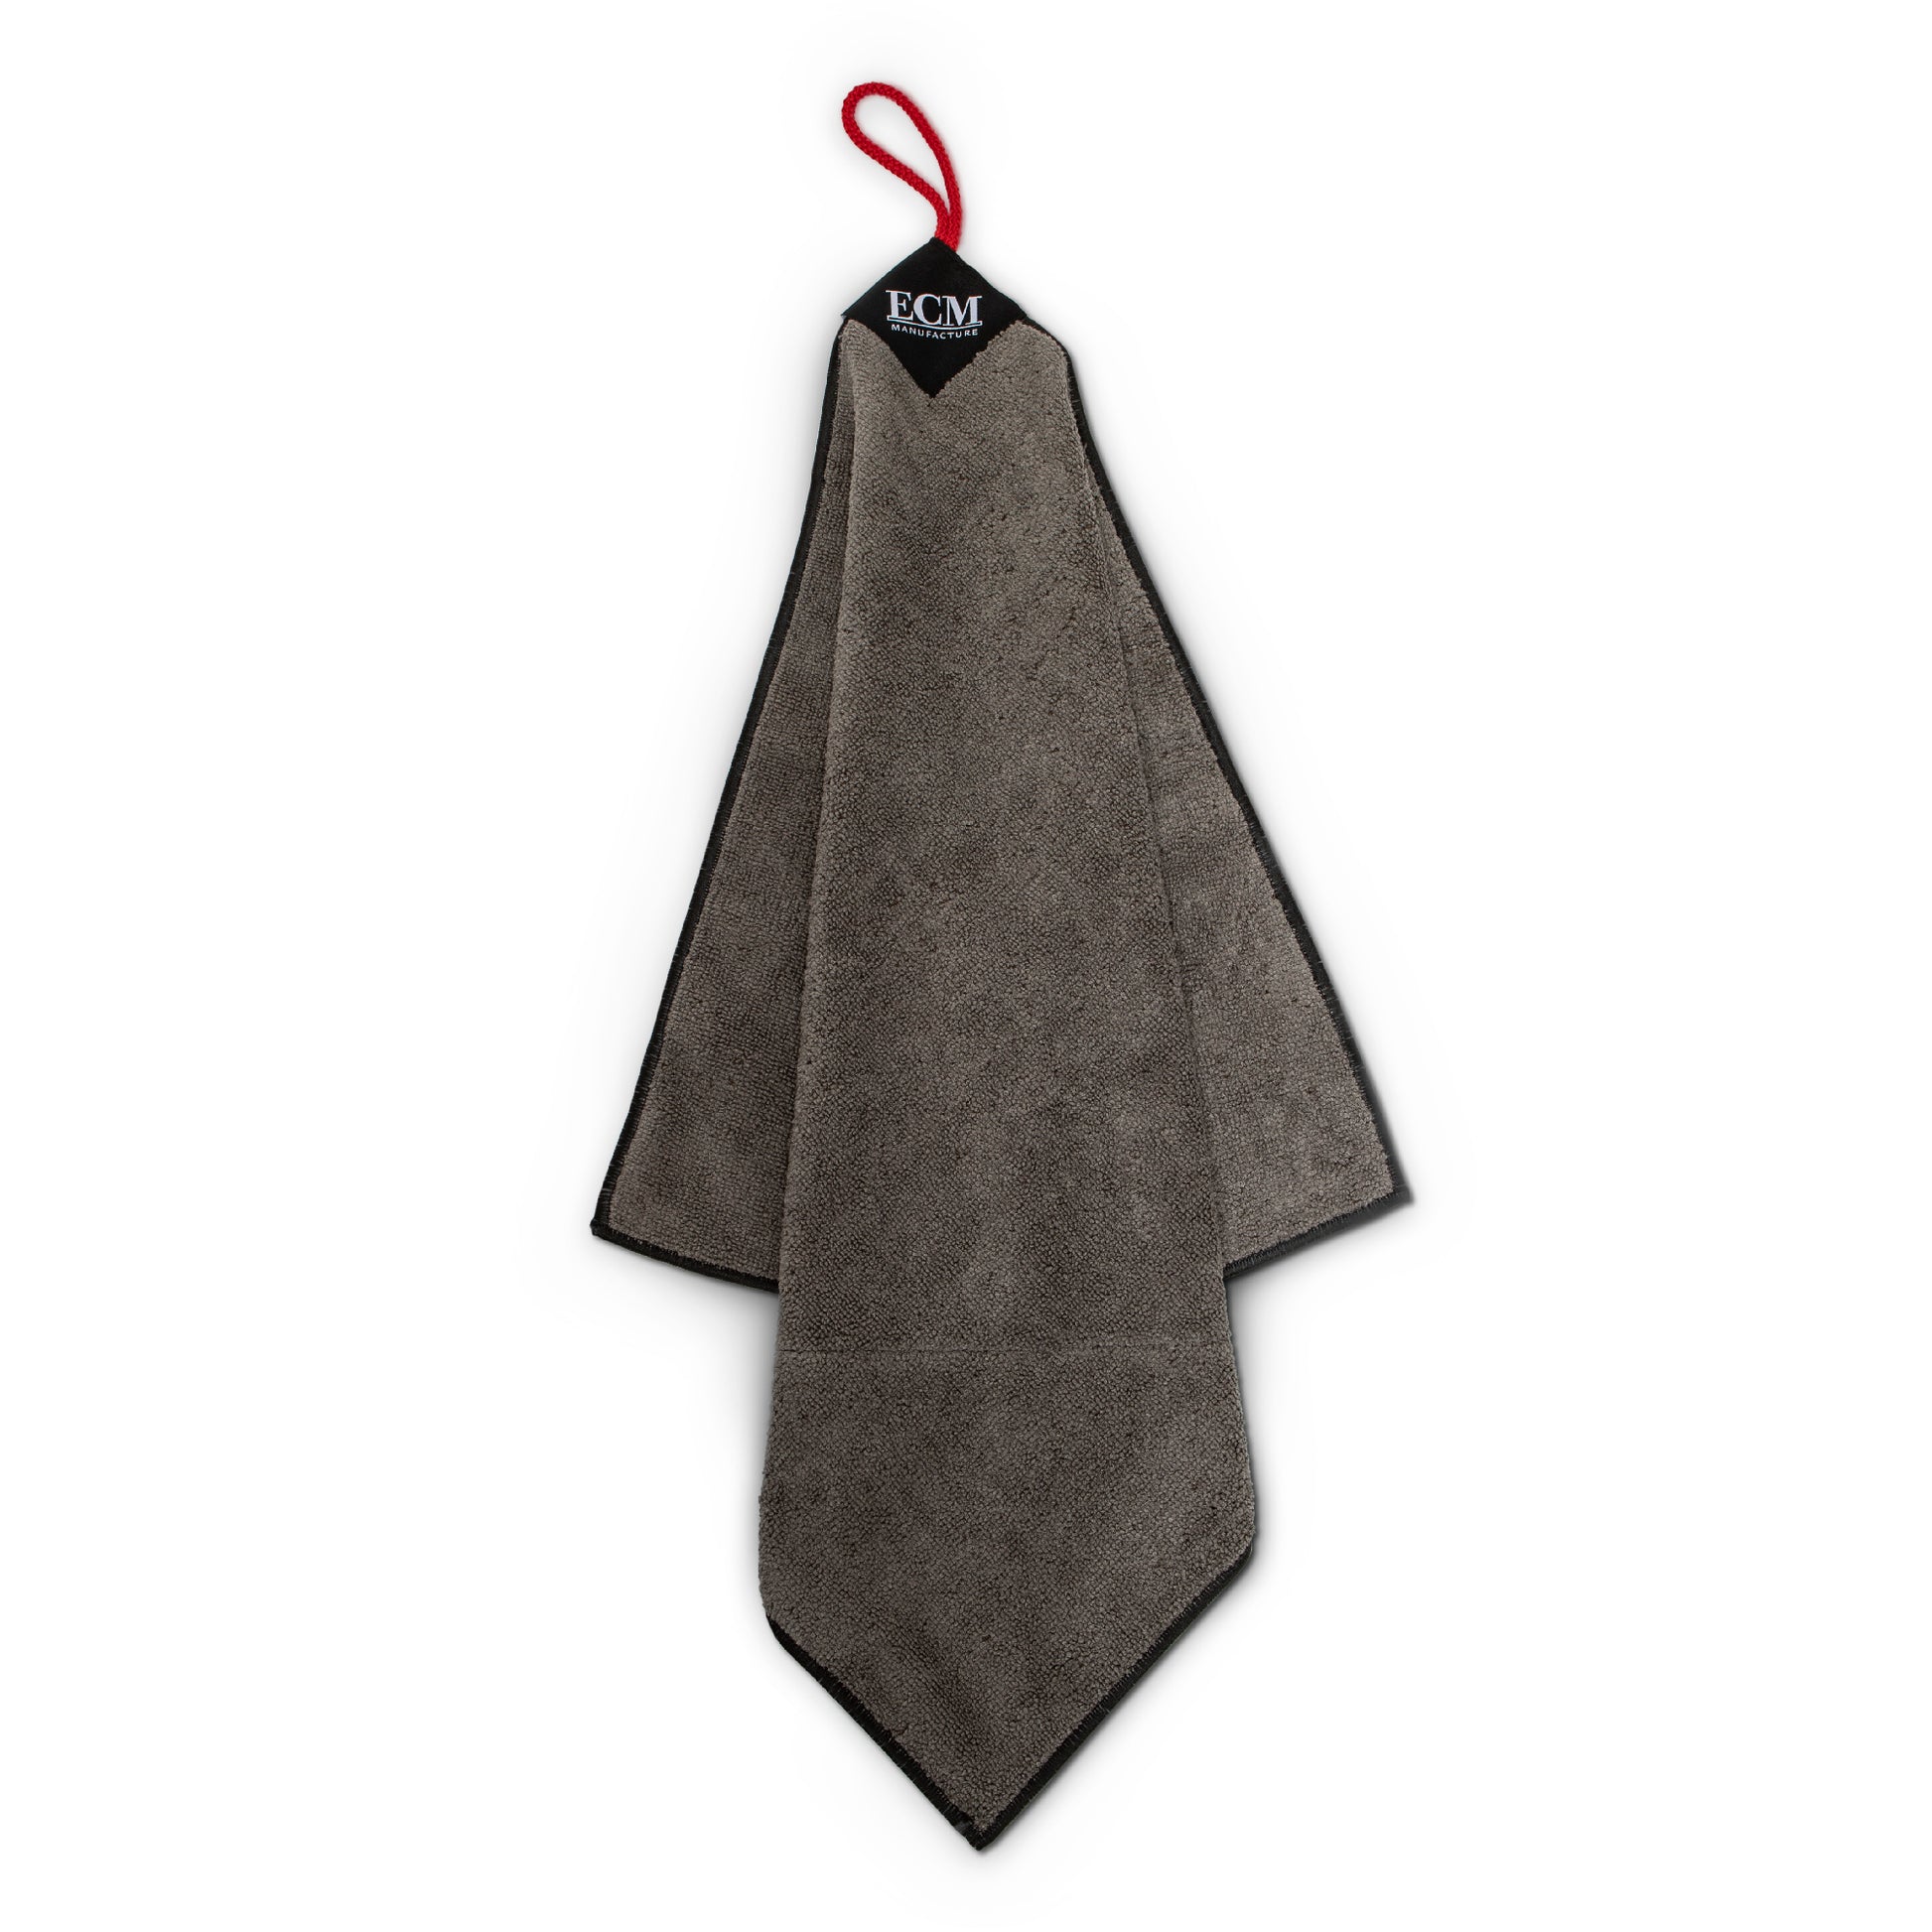 Cloth Towel – Barista Basics